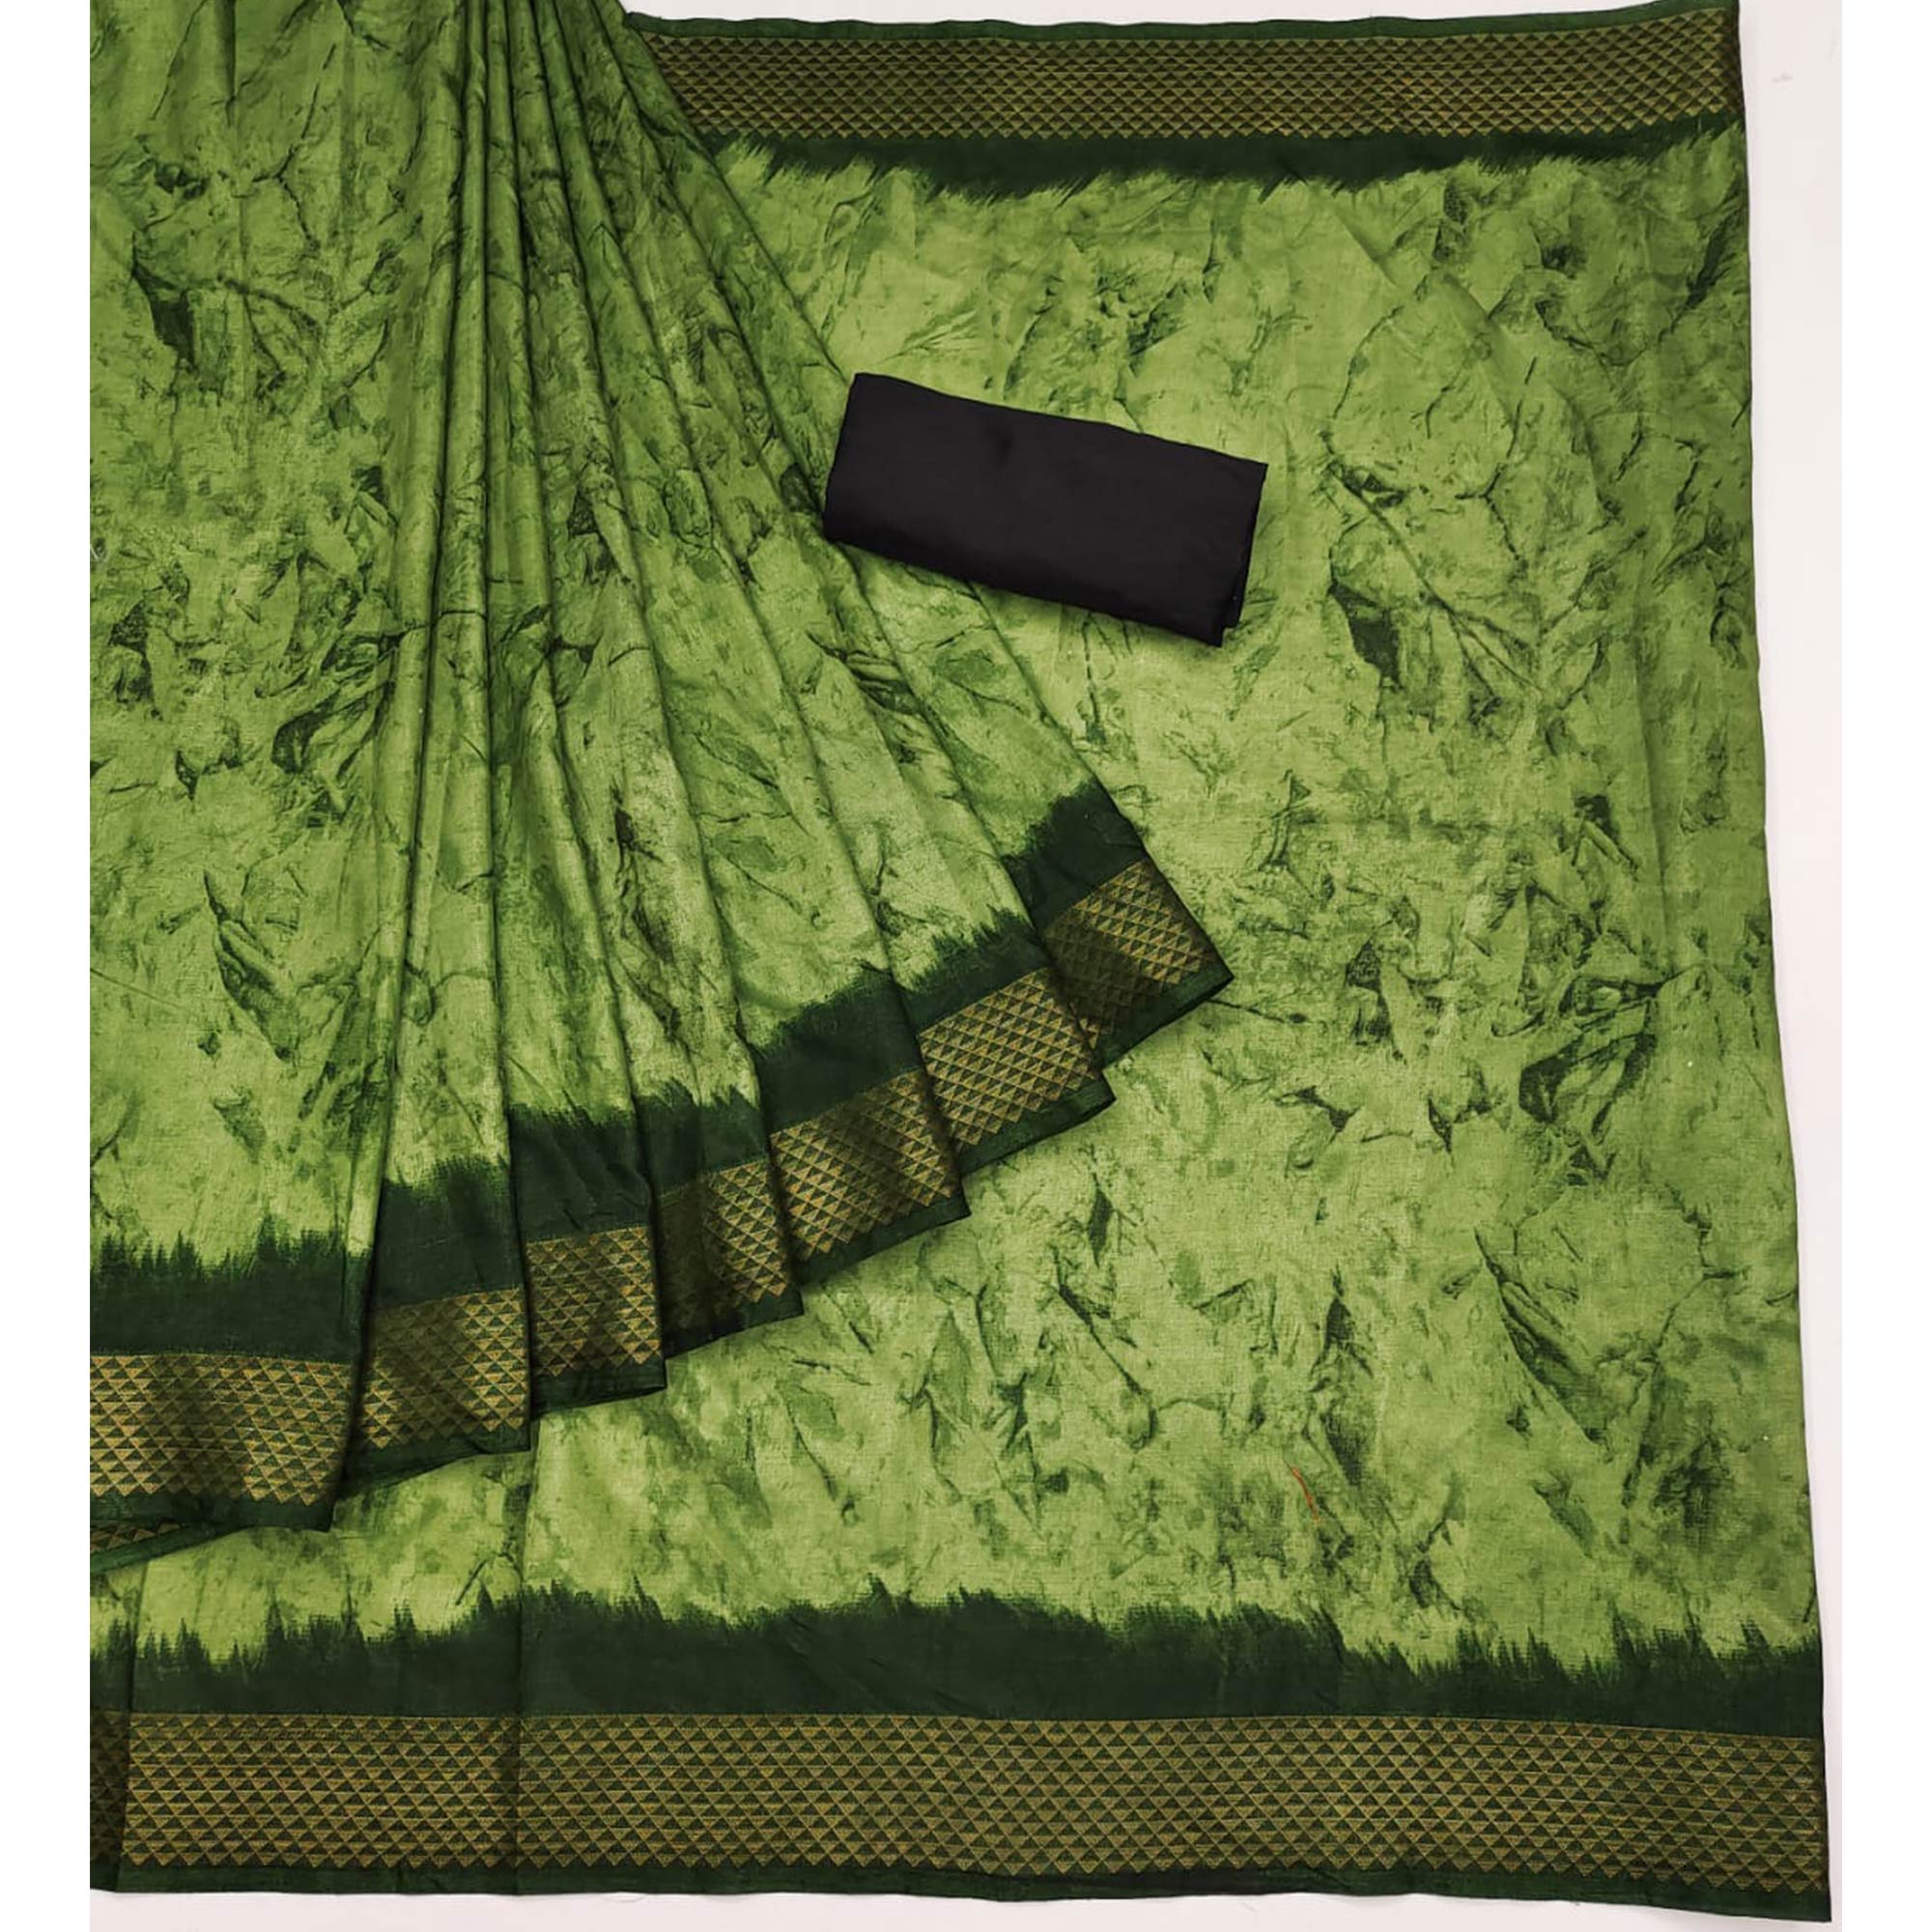 Green Printed Art Silk Saree